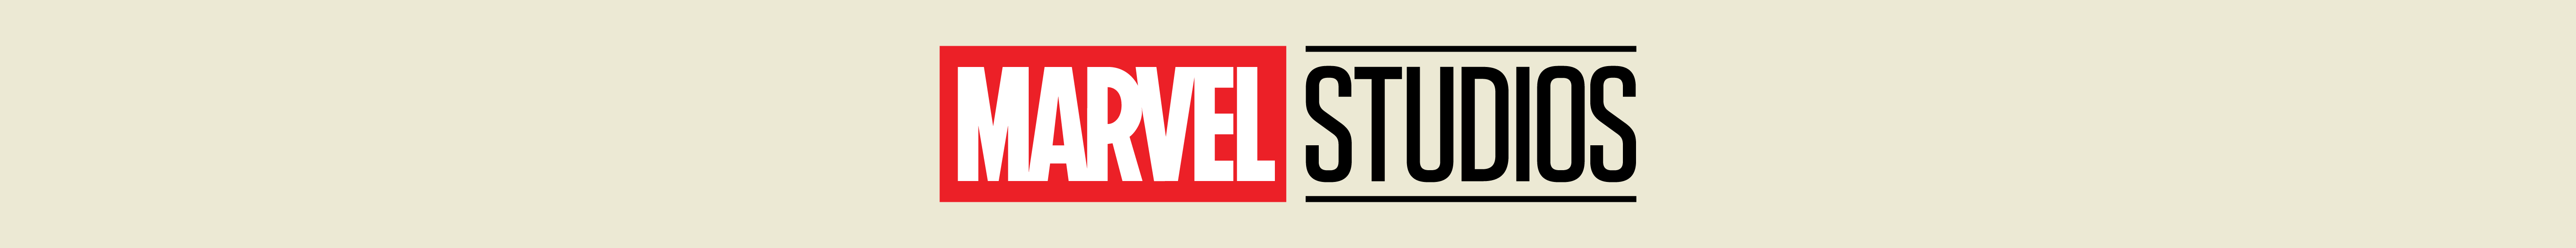 Marvel Studios - Banner